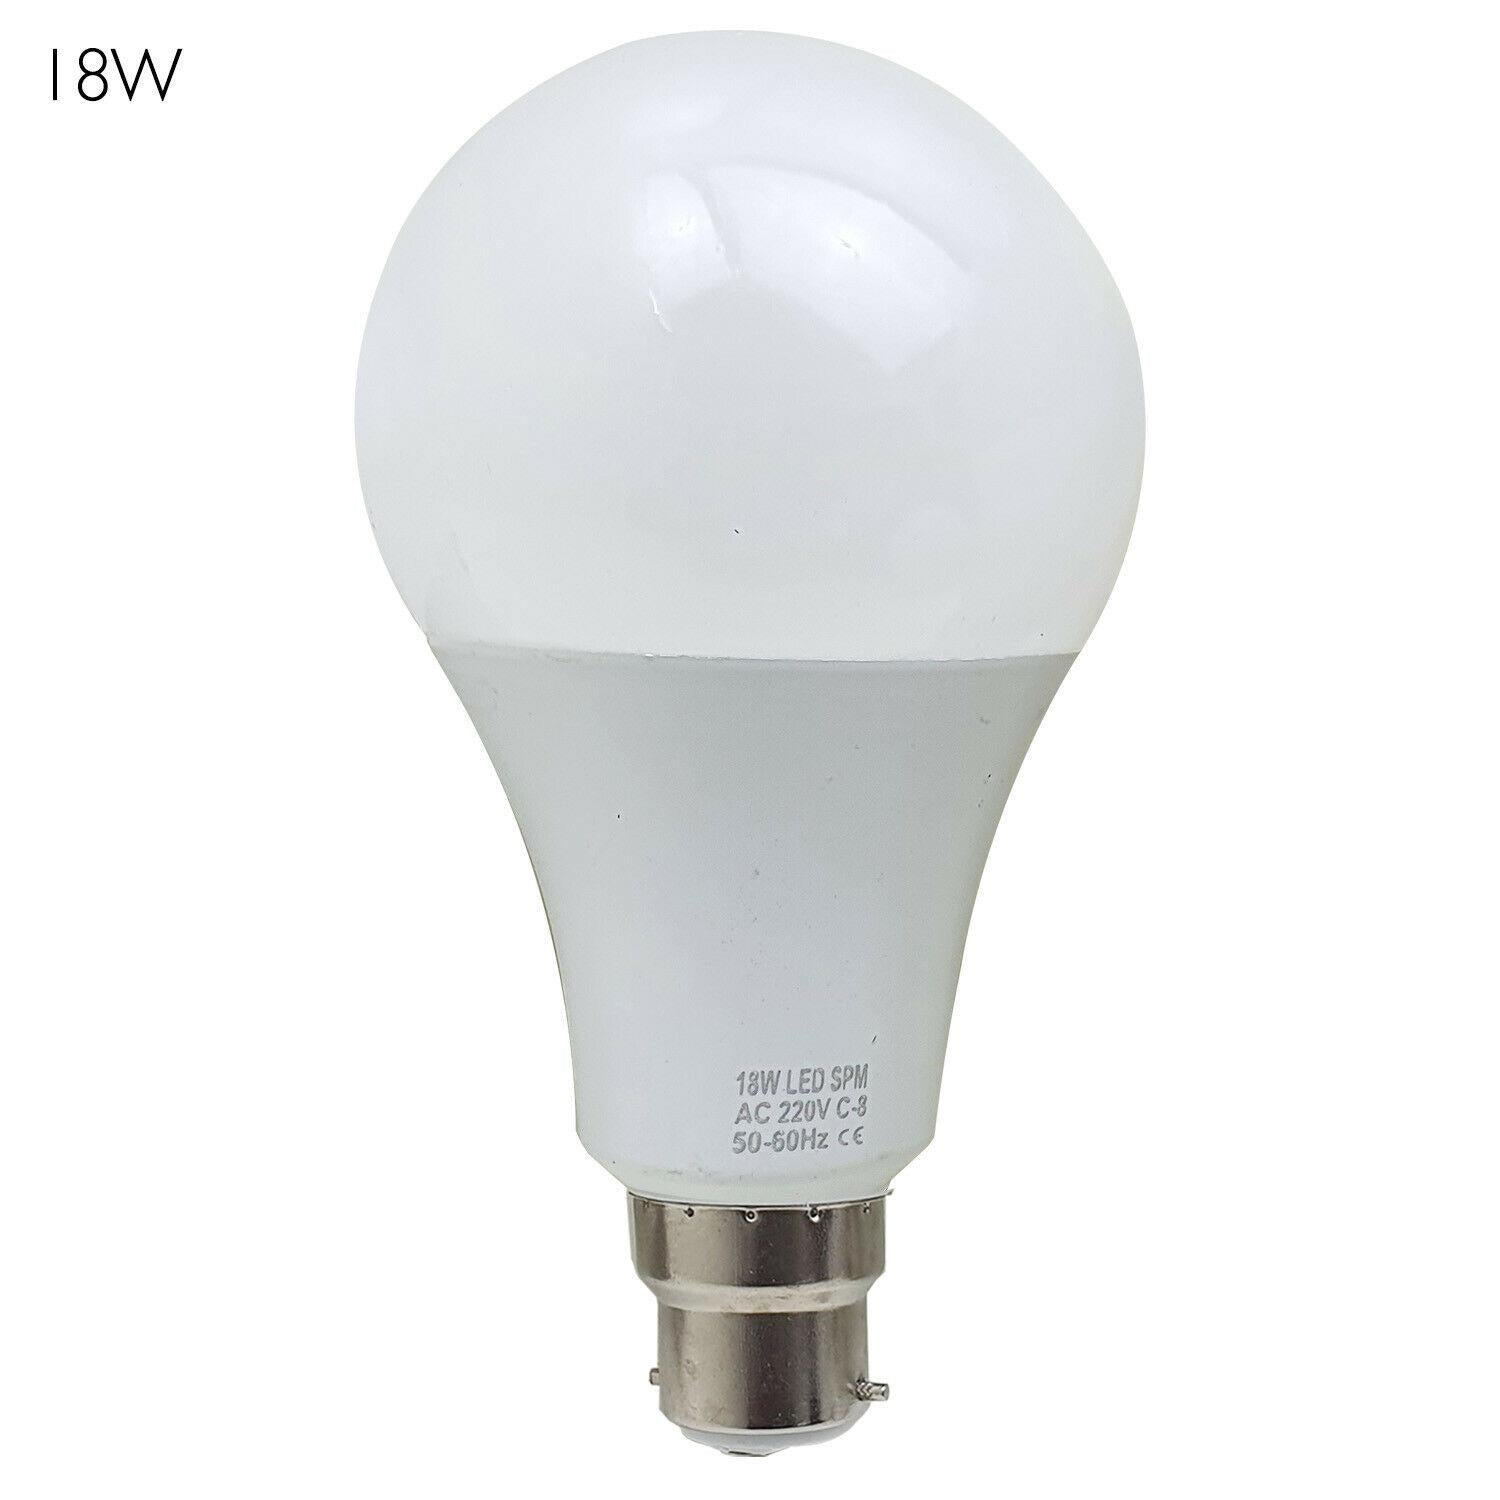 3 X LED Lamp 3W-25W B22 E27 GLS Light Bulbs 0 - LEDSone UK Ltd